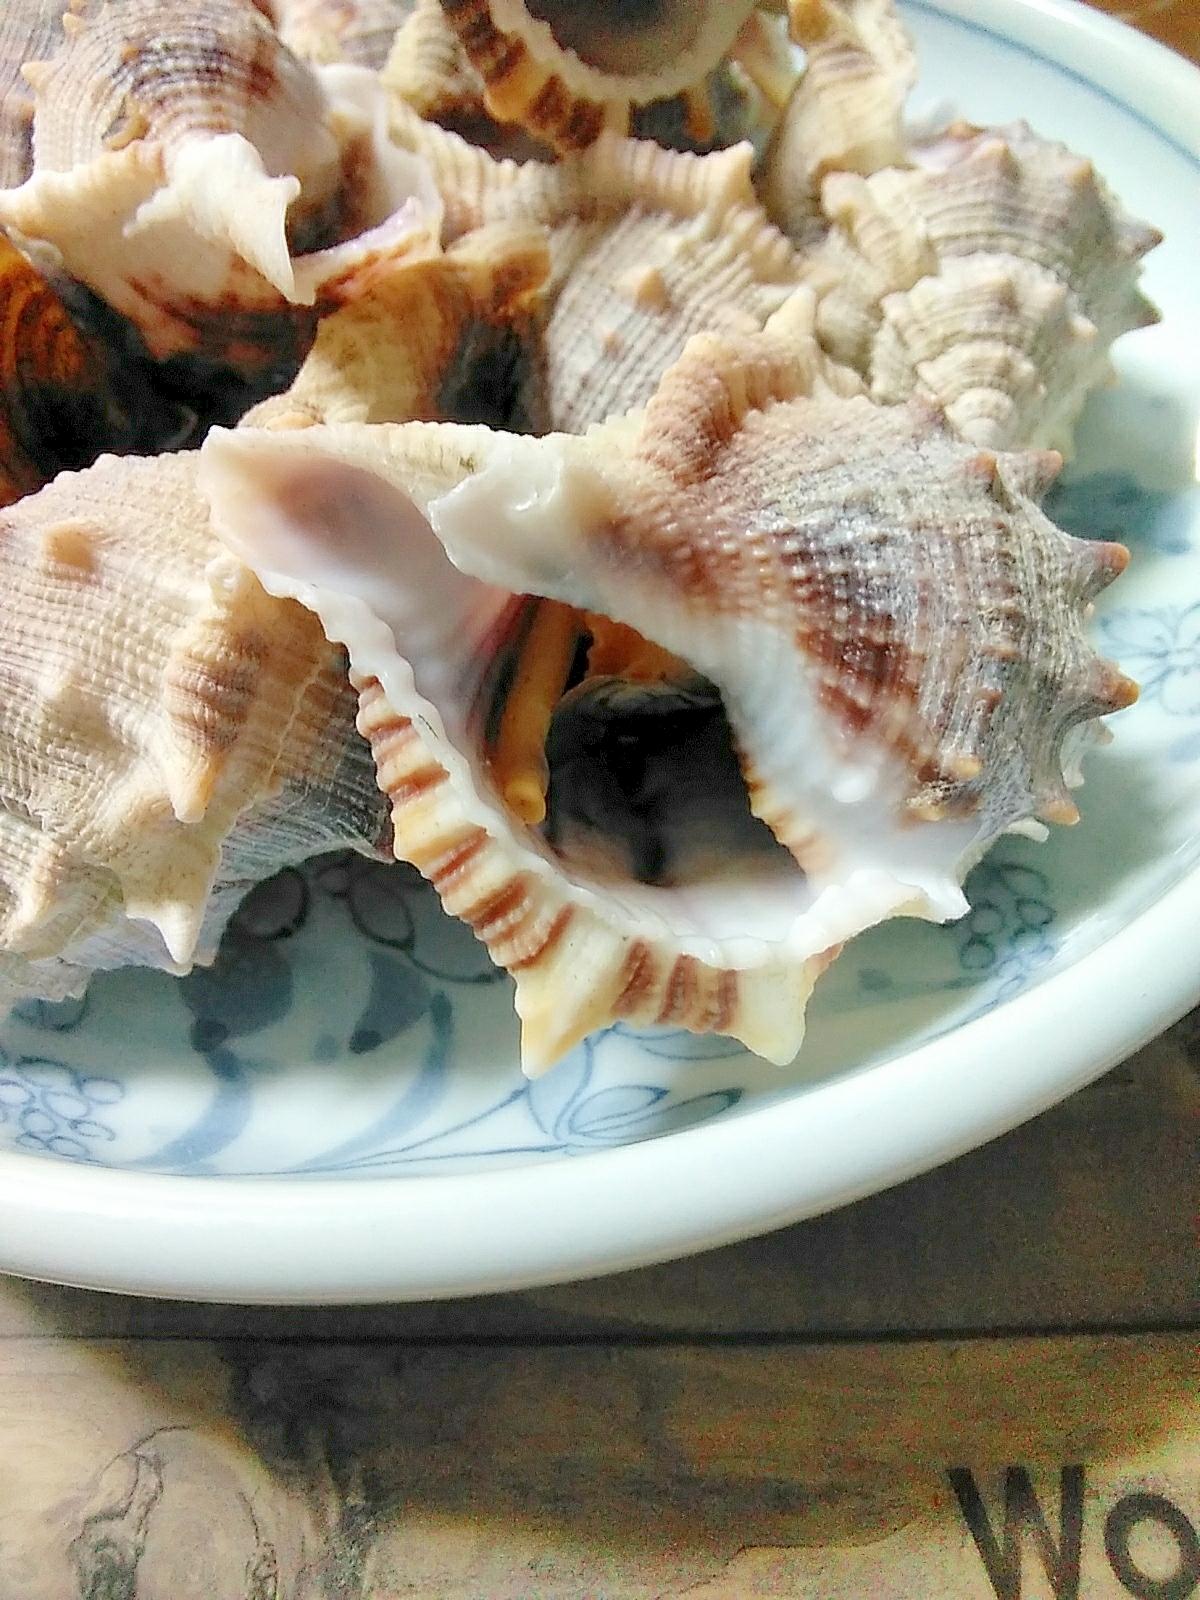 ミヤコボラ貝の食べ方